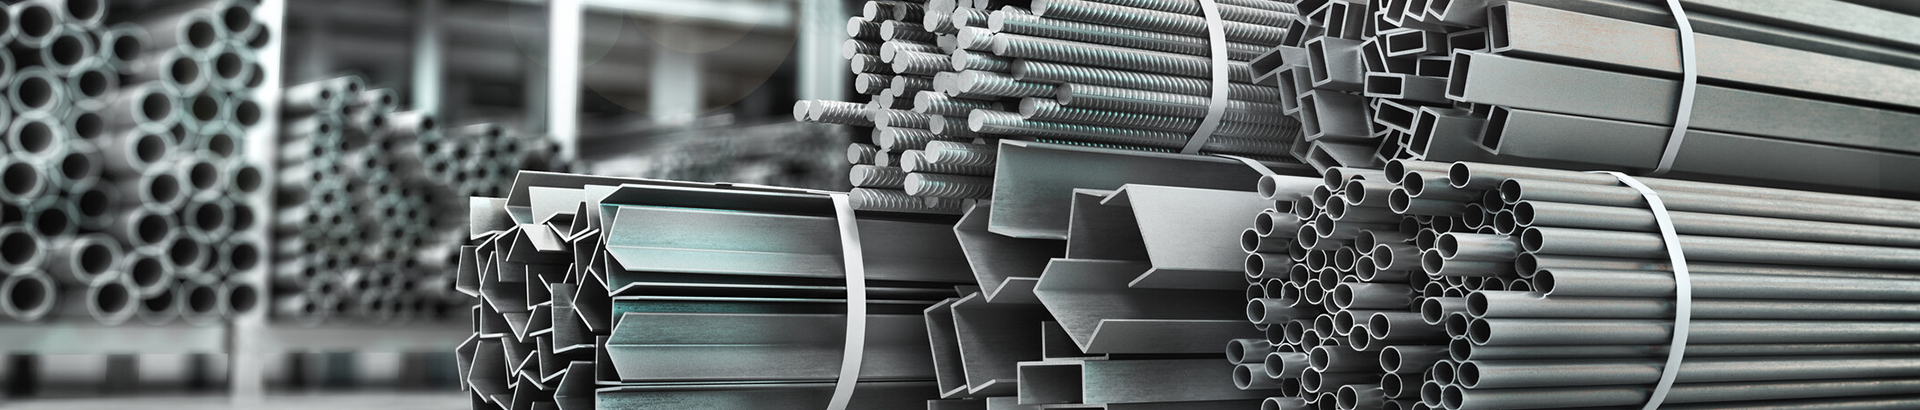 Understanding the Steel Industry Chain